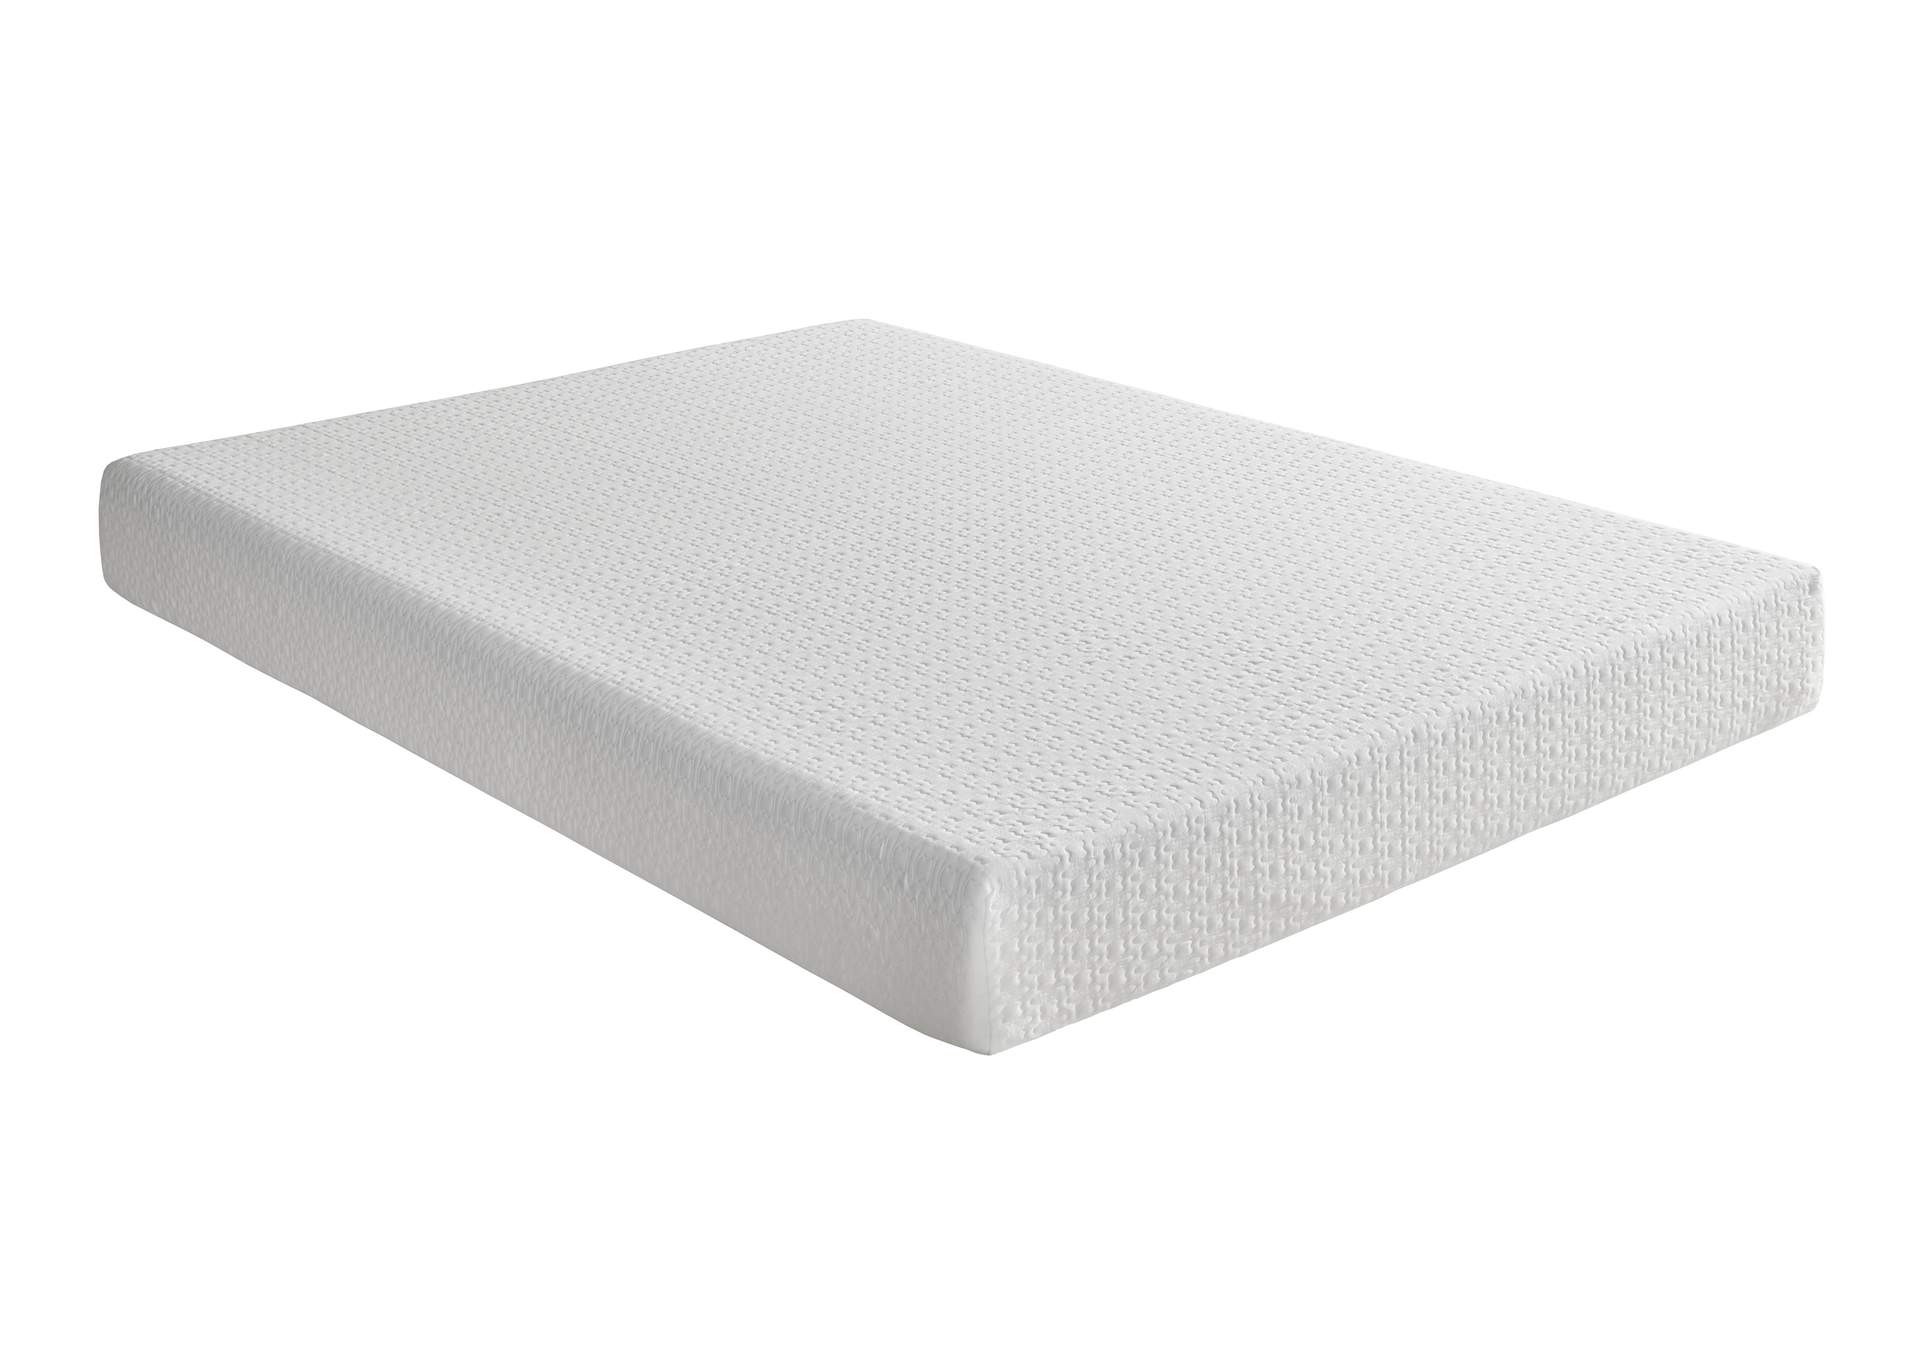 G 8'' Gel-Infused Memory Foam-Bedding White Full Mattress,Homelegance